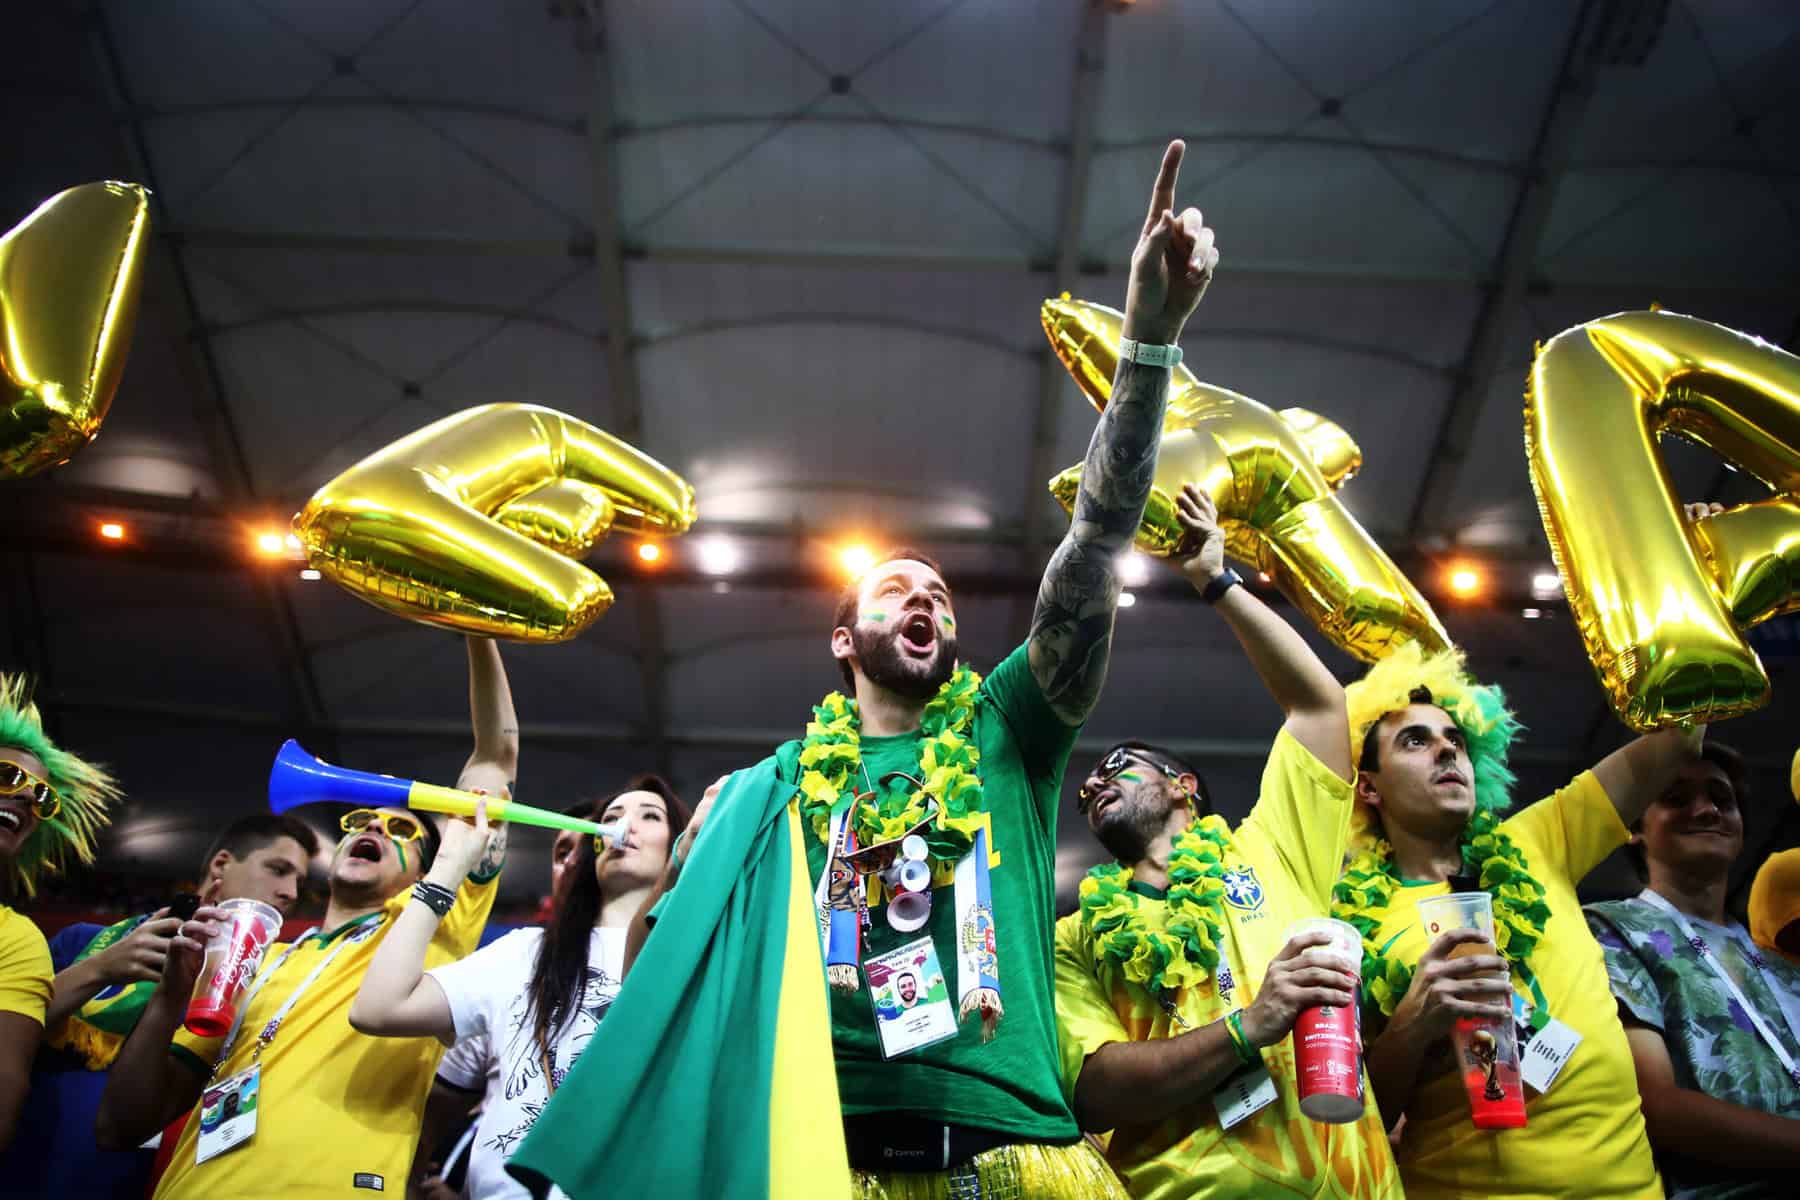 Vai ser feriado nos dias dos jogos do Brasil na Copa do Mundo de